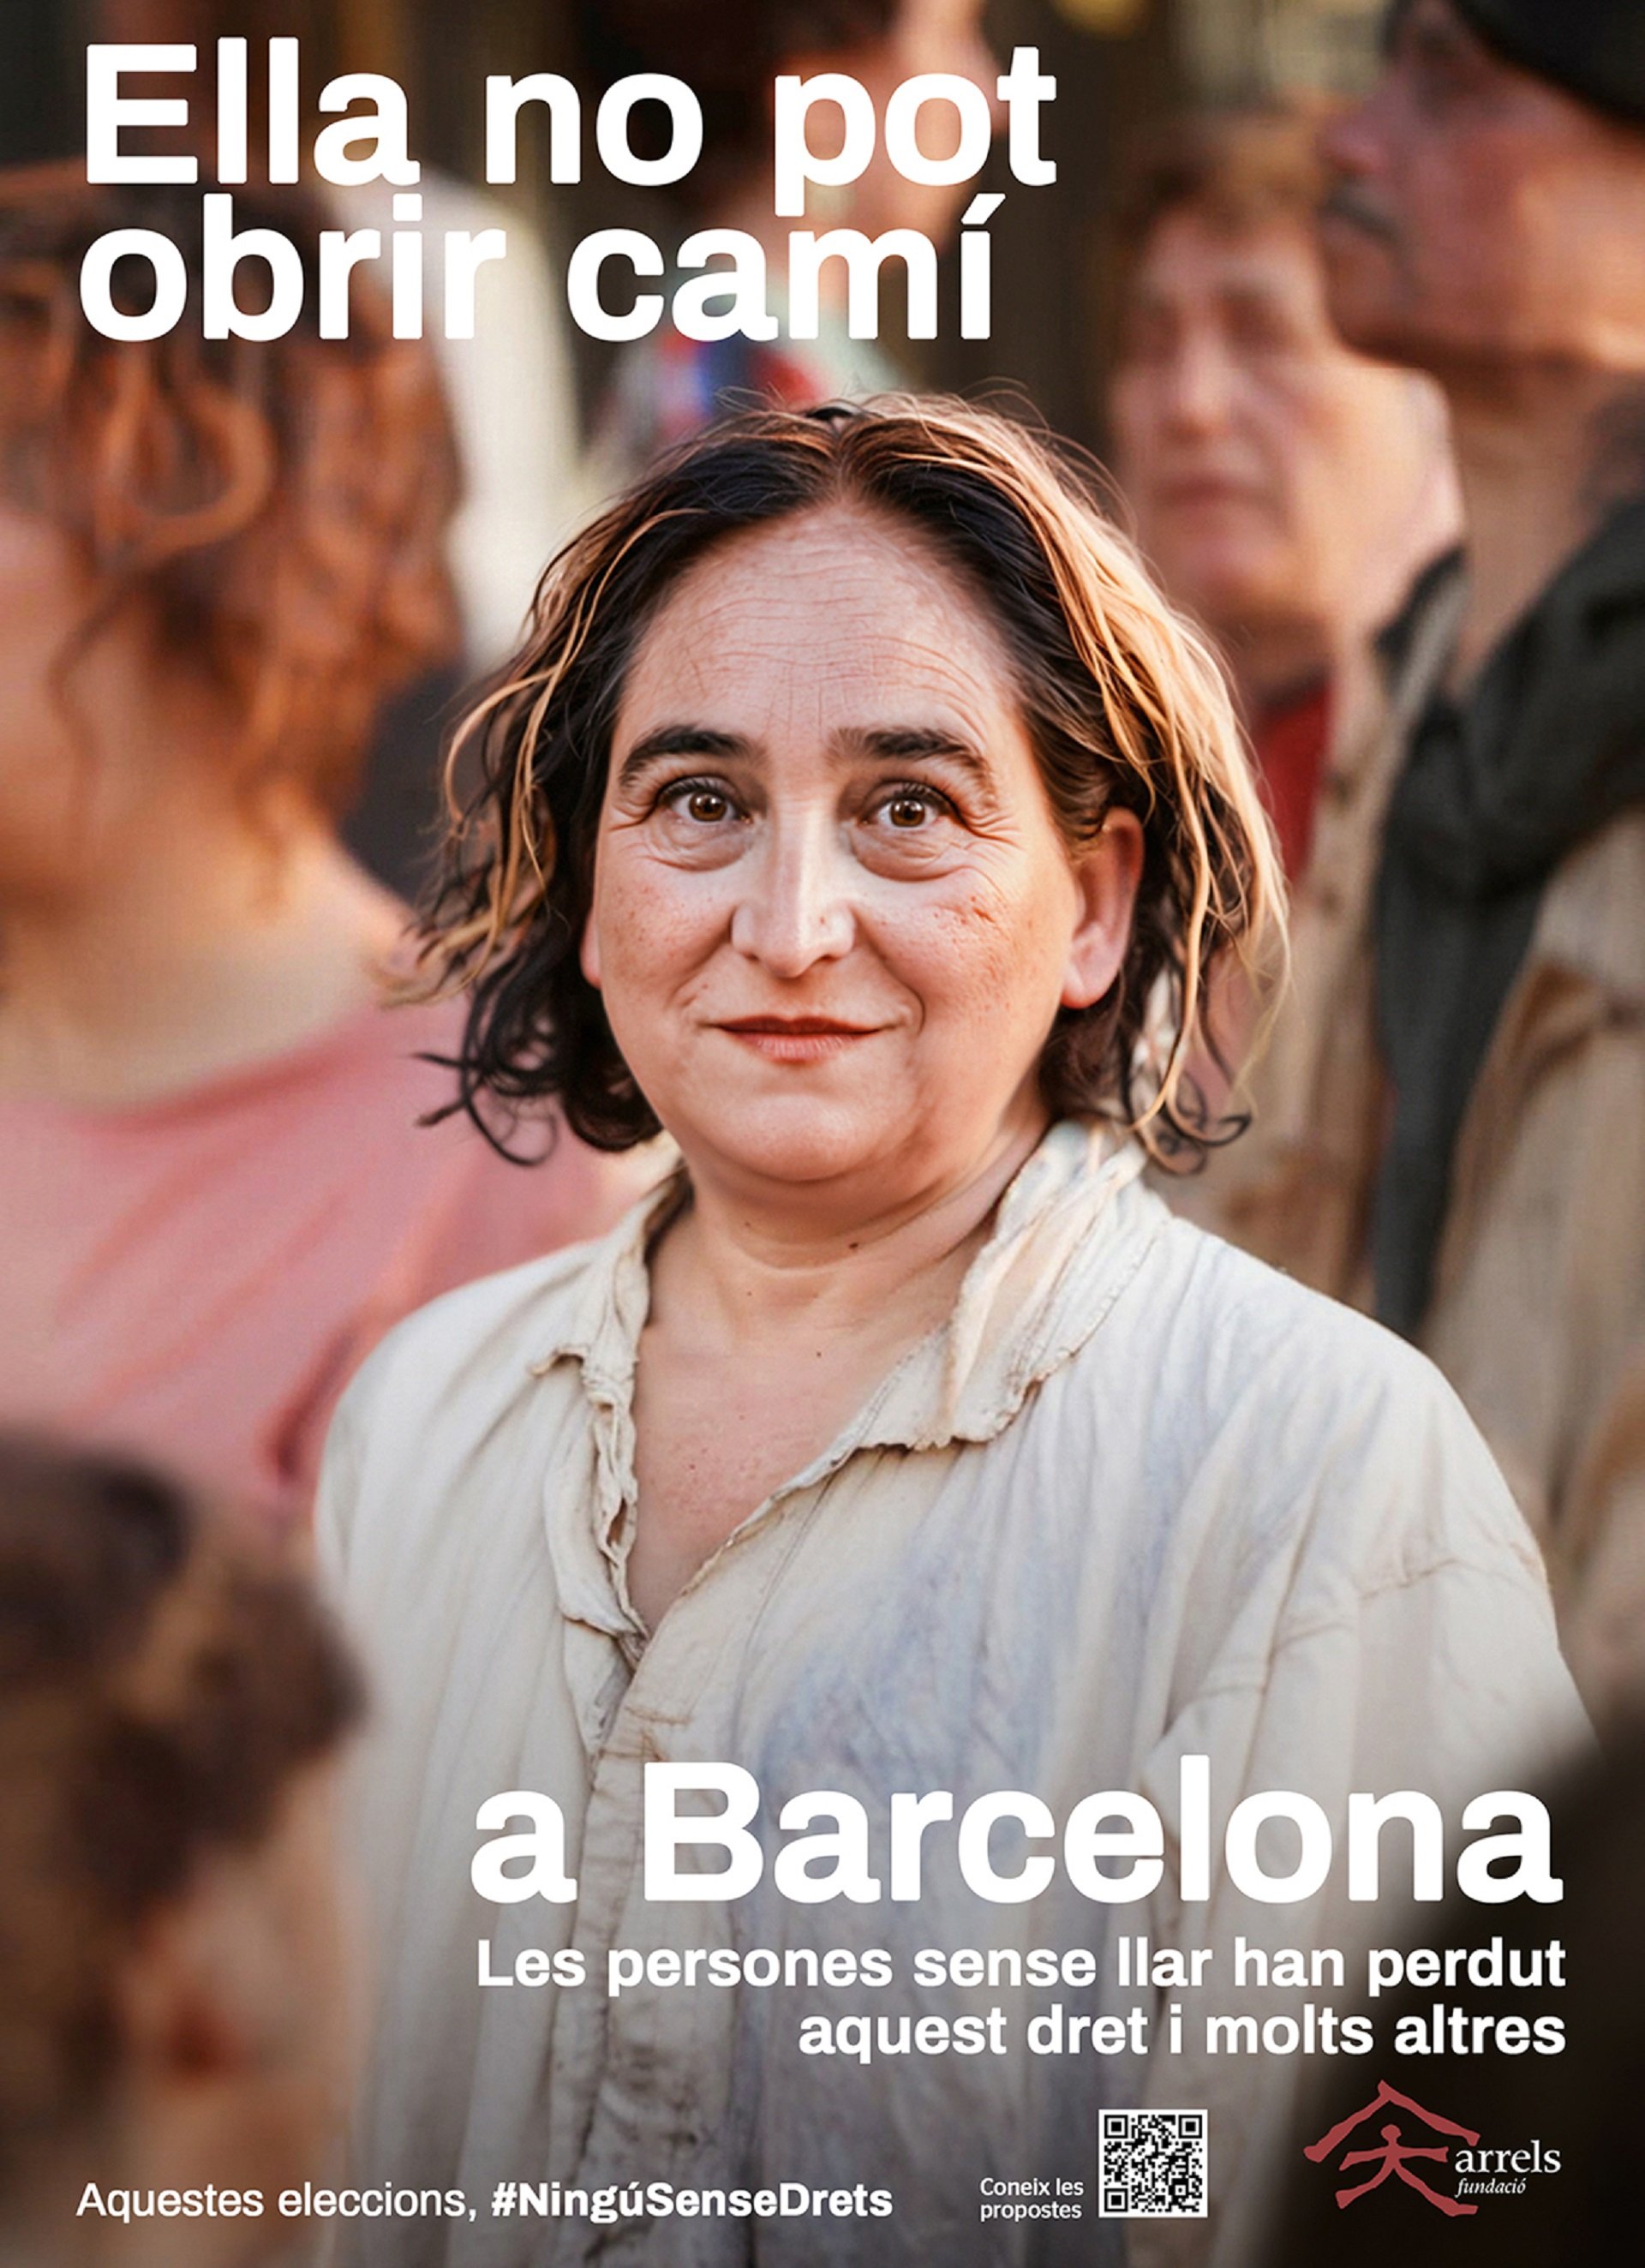 La Fundació Arrels caracteriza a varios candidatos a la alcaldía de Barcelona como personas sin hogar